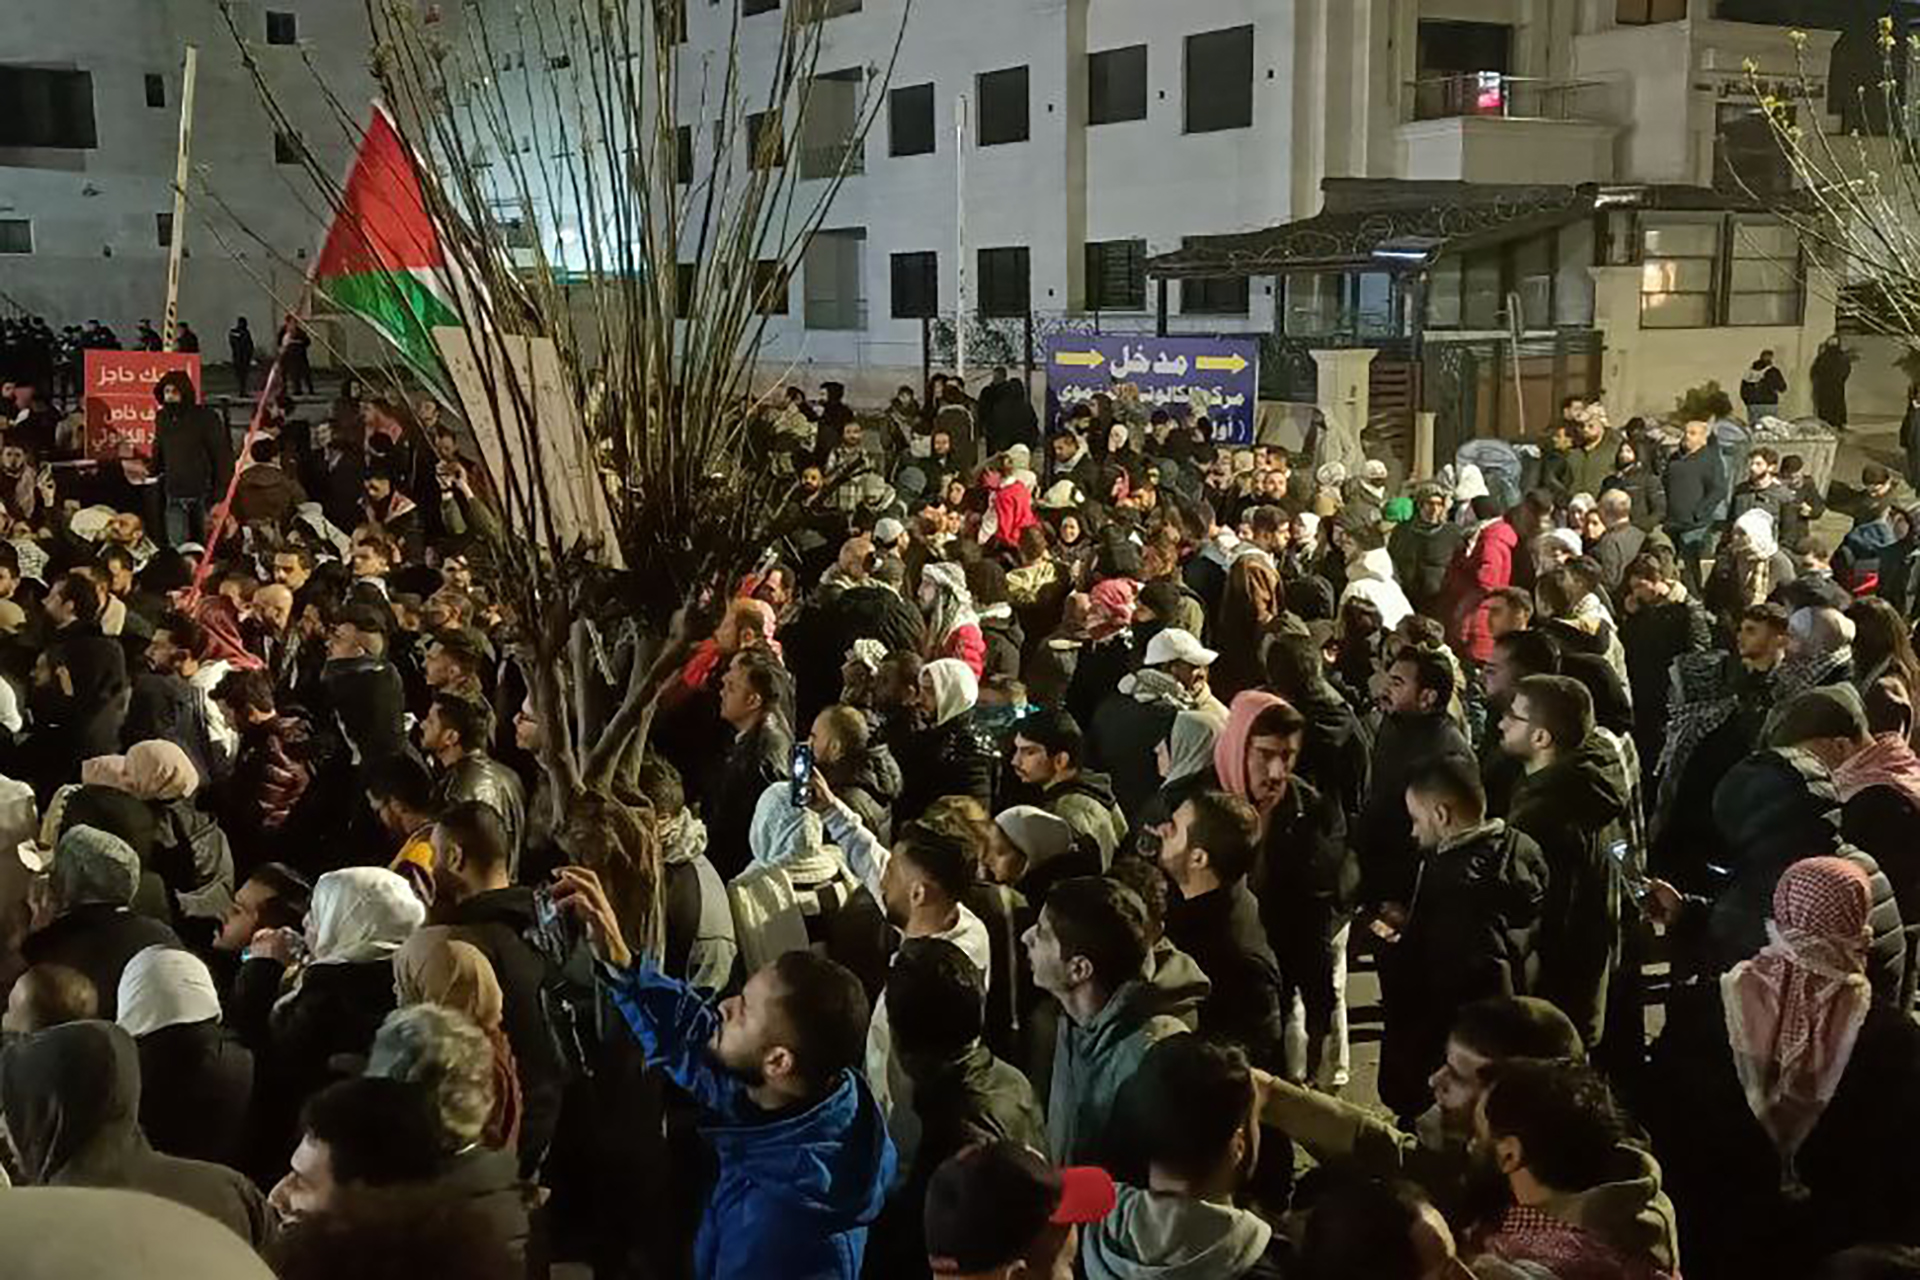 الأردن يعتقل المئات ويفض مظاهرات بمحيط السفارة الإسرائيلية | أخبار – البوكس نيوز